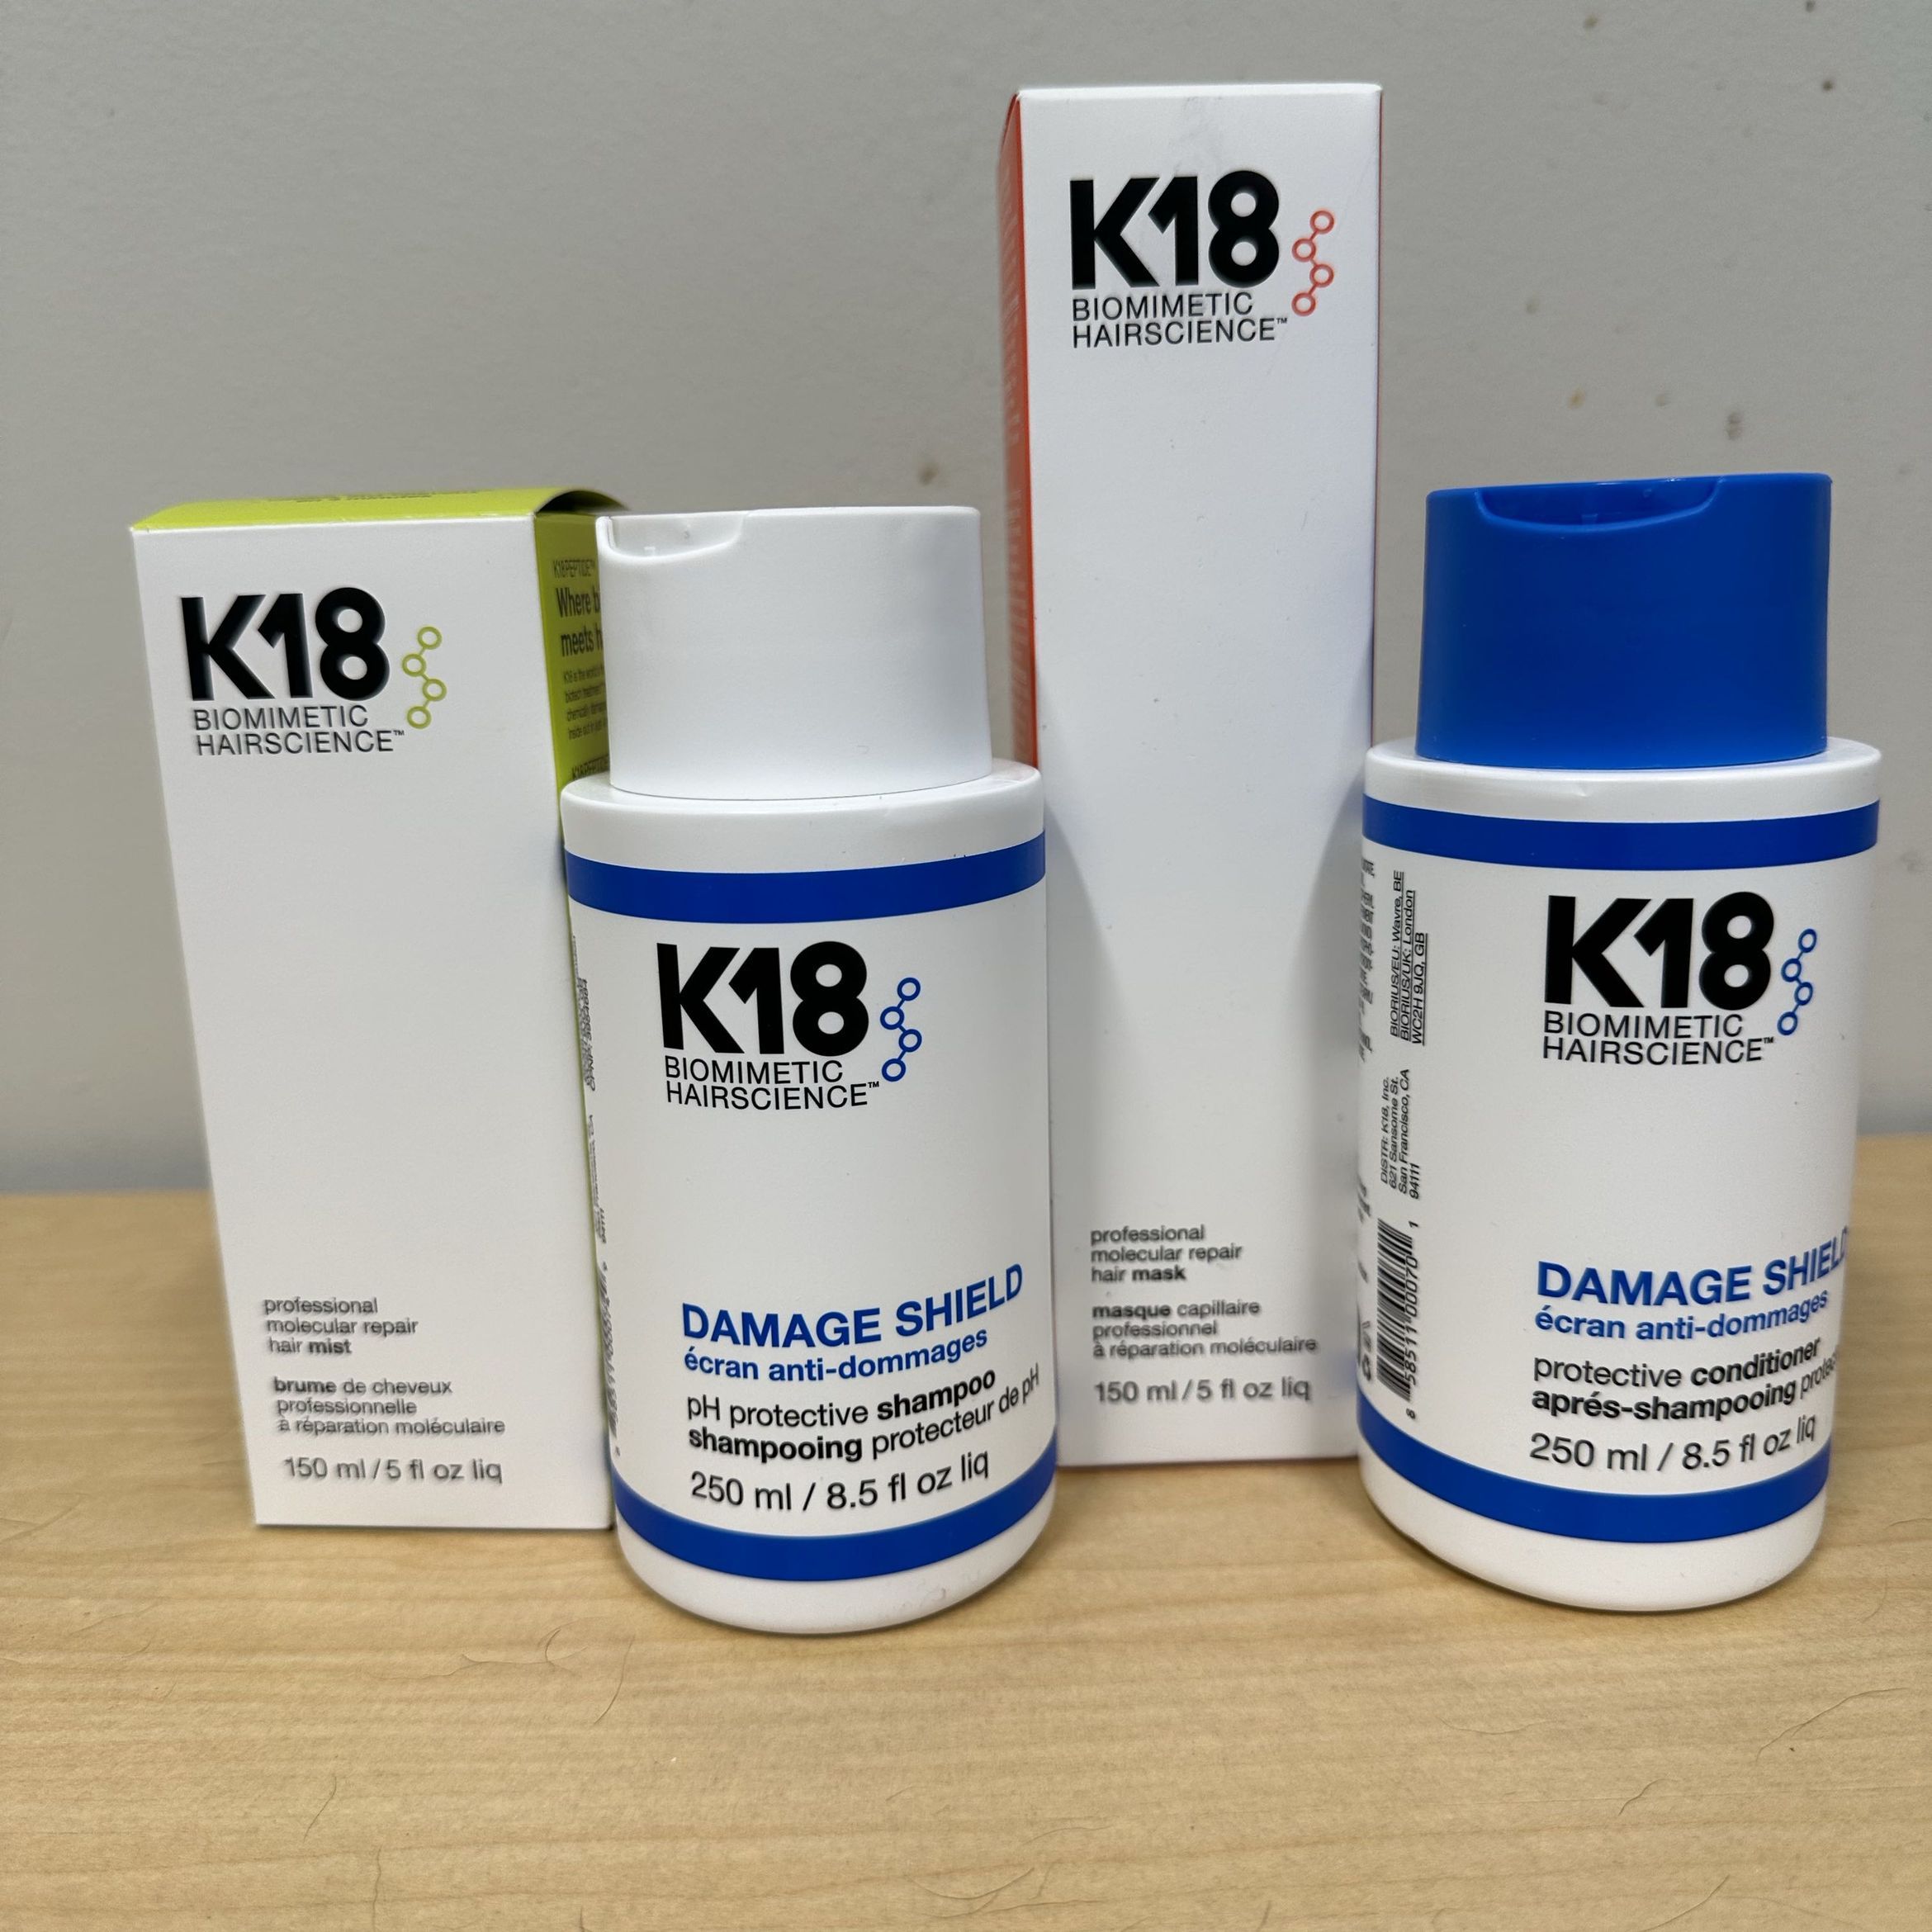 K18 professional molecular repair Line portfolio